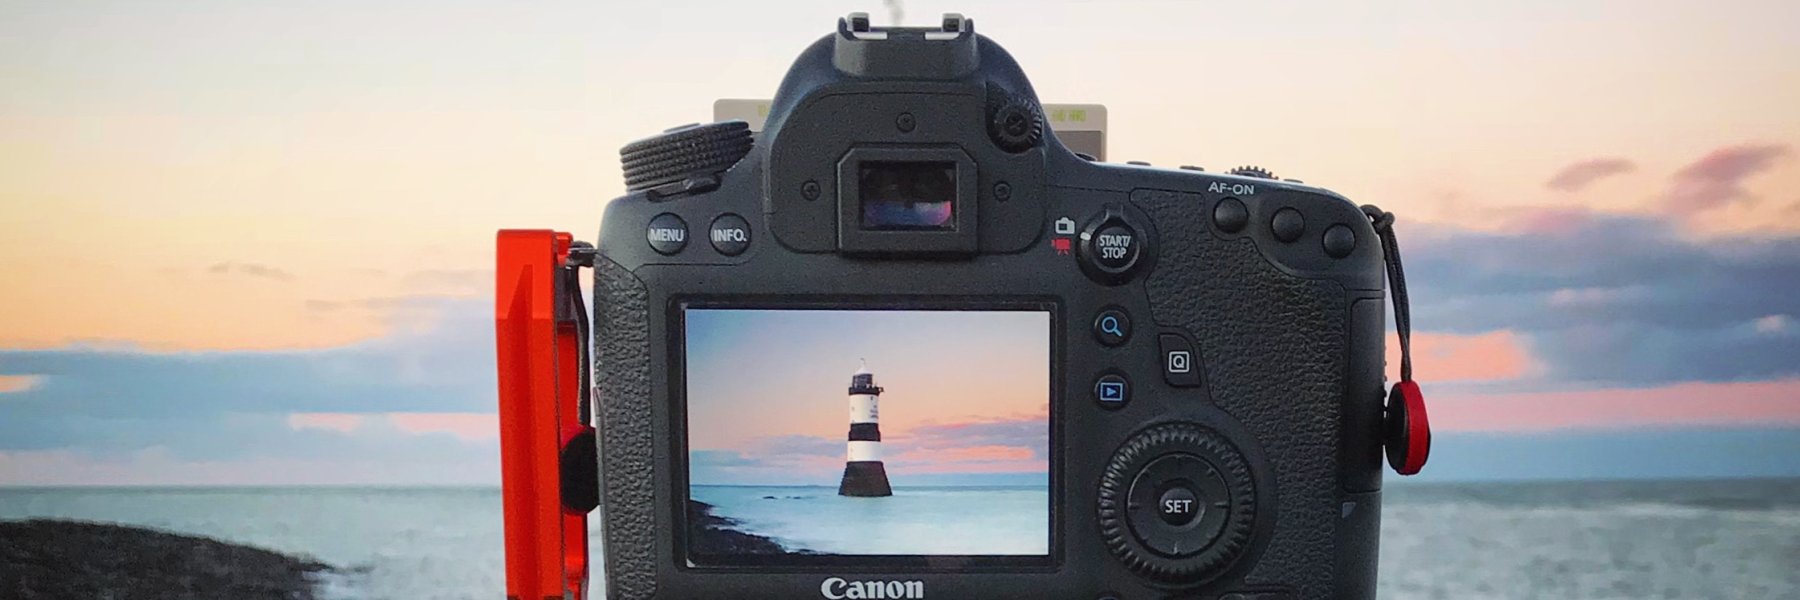 Digitalkamera mit Stativ am Strand